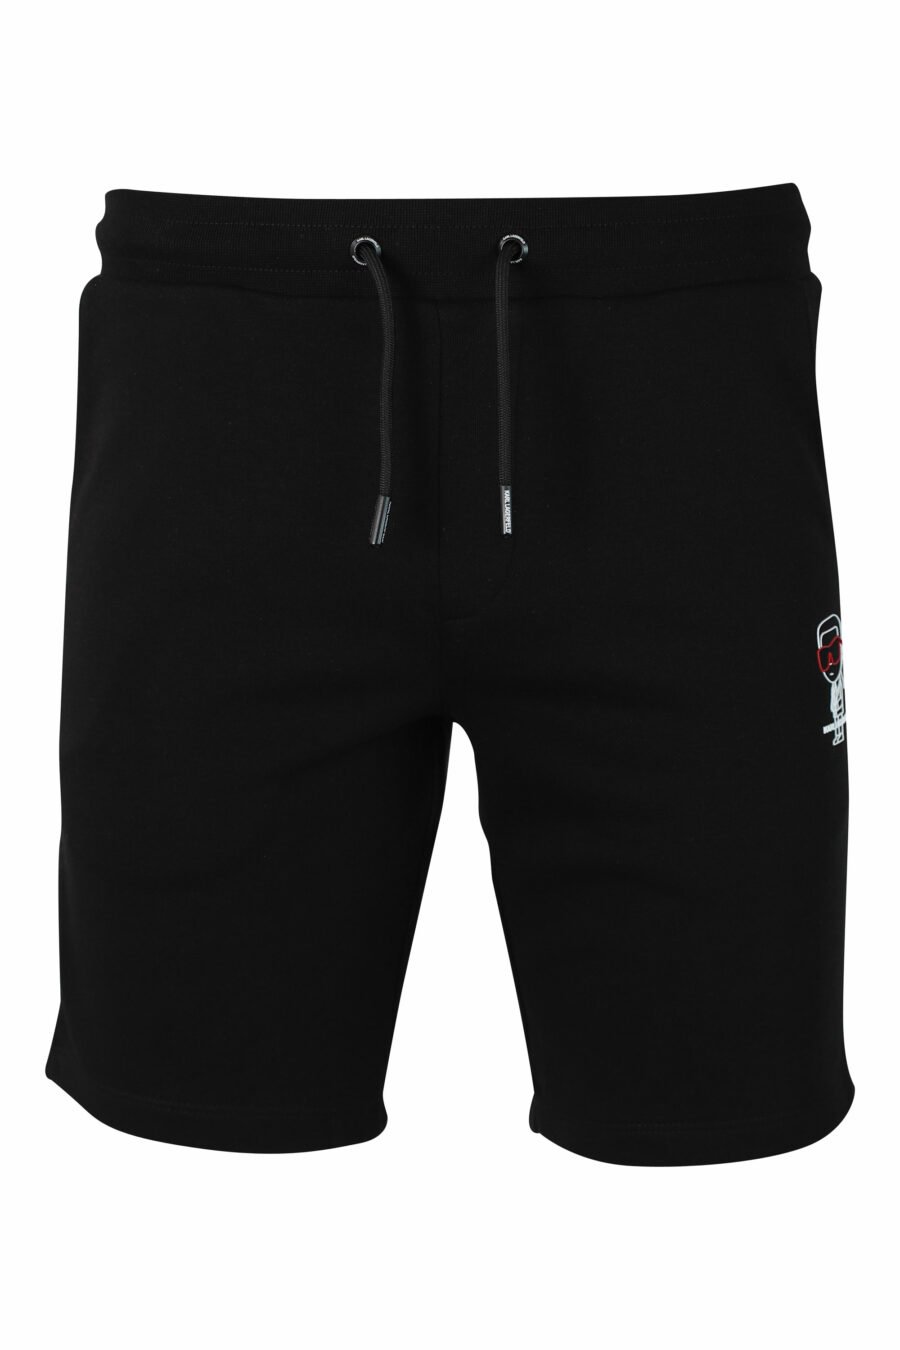 Pantalón de chándal negro corto con logo en silueta blanco - IMG 9892